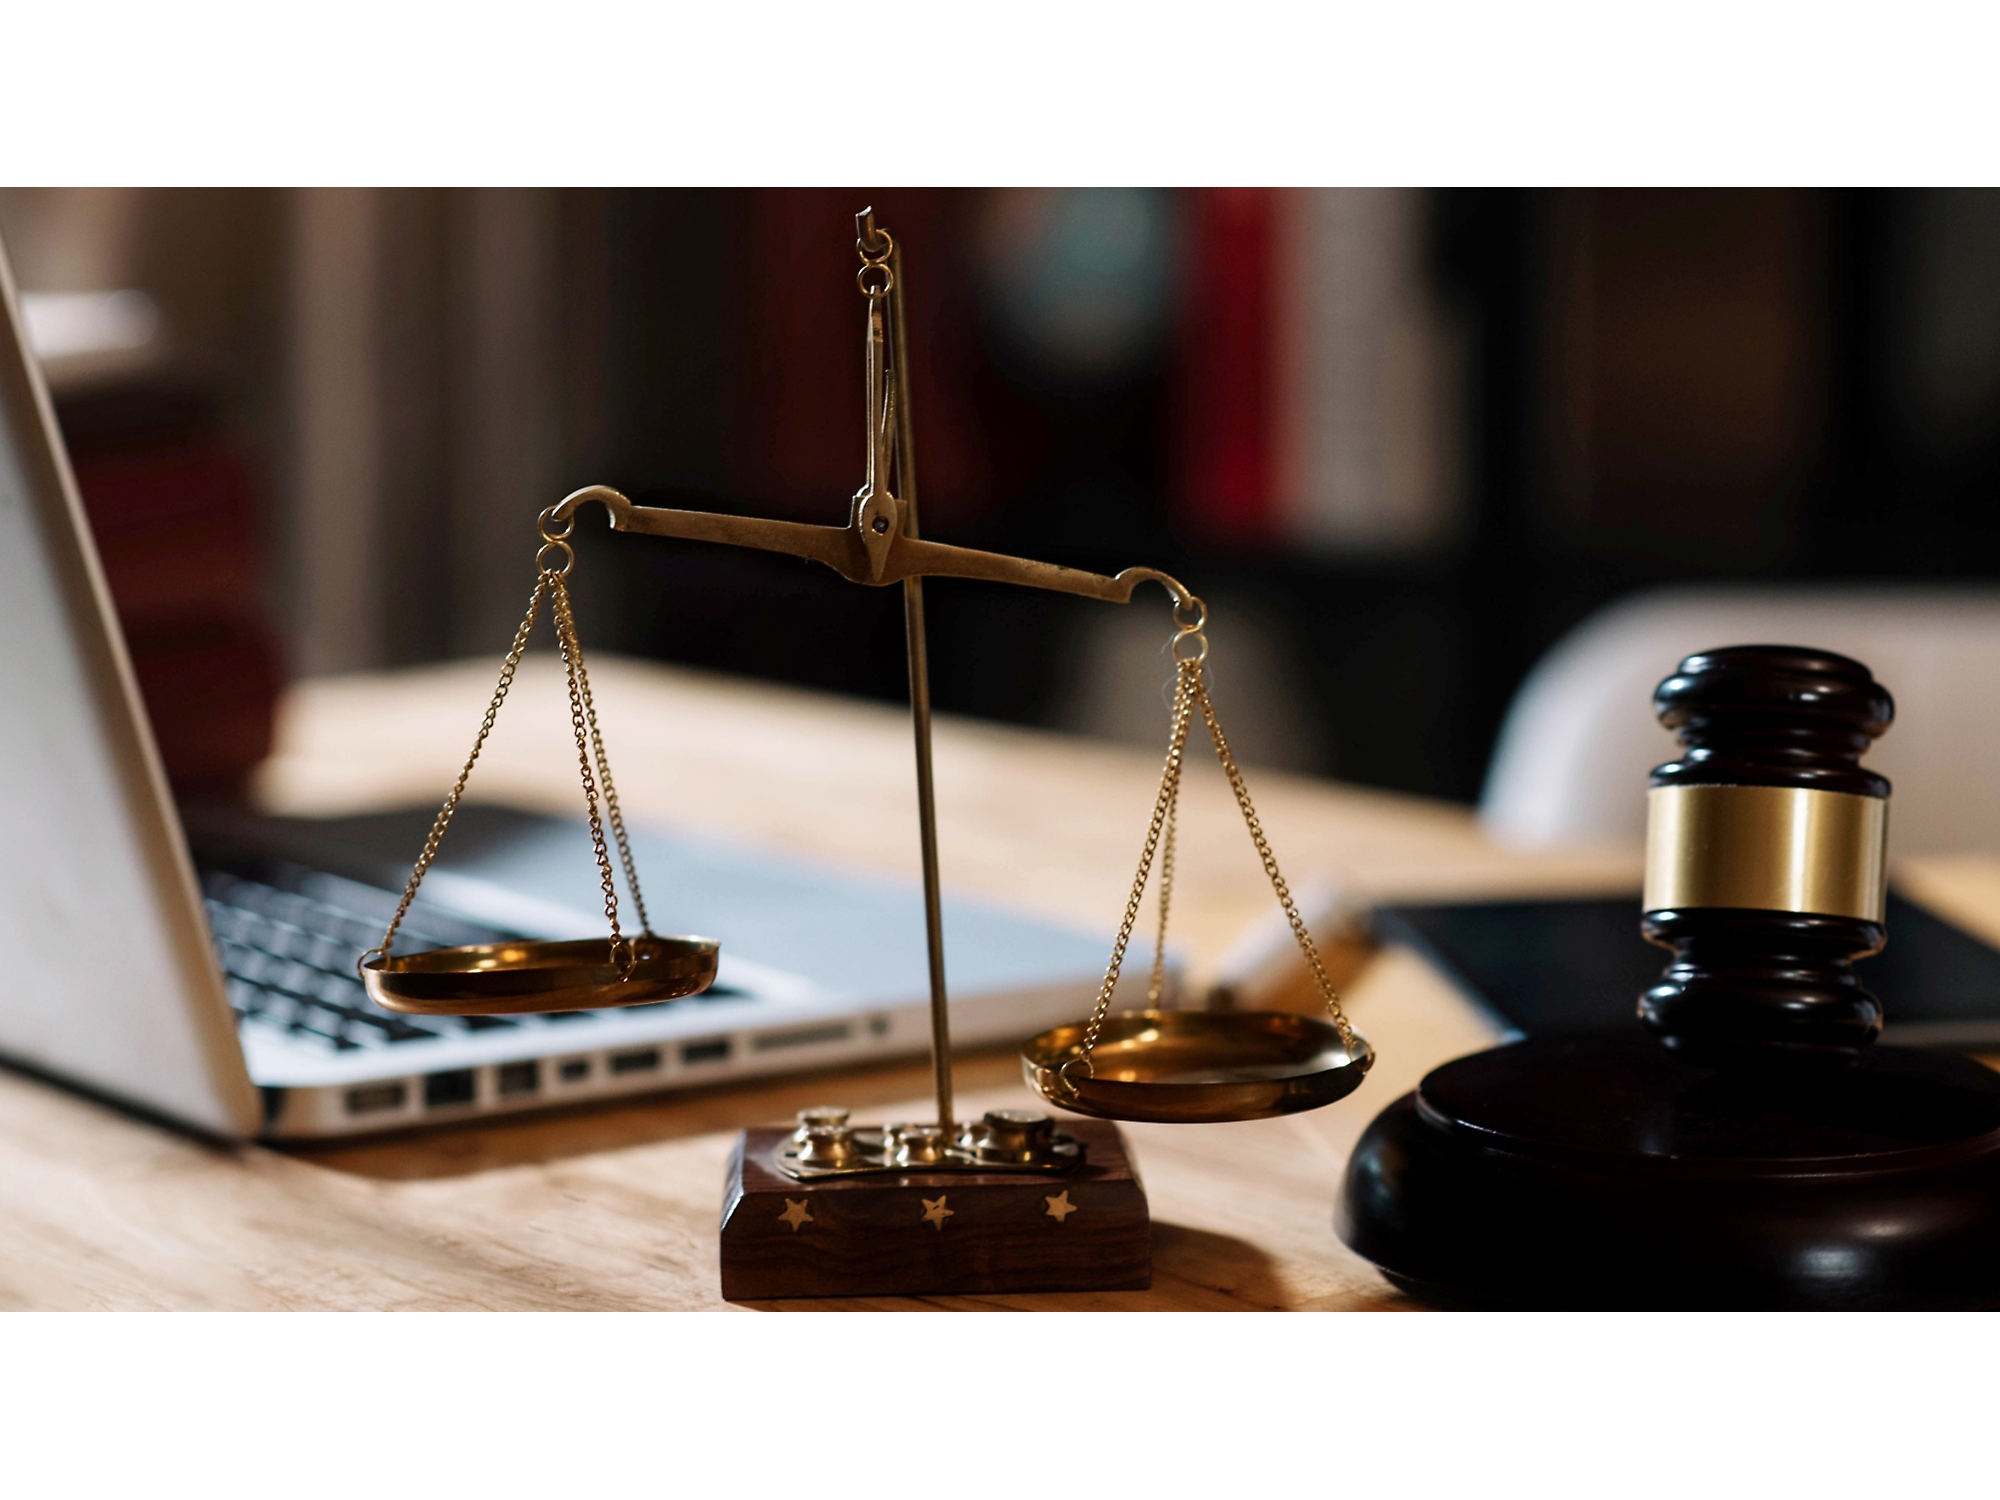 Chiếc búa gỗ và một cán cân trên bàn làm việc, với một chiếc máy tính xách tay phía sau, tượng hình cho việc thực hành pháp lý trong không gian văn phòng.